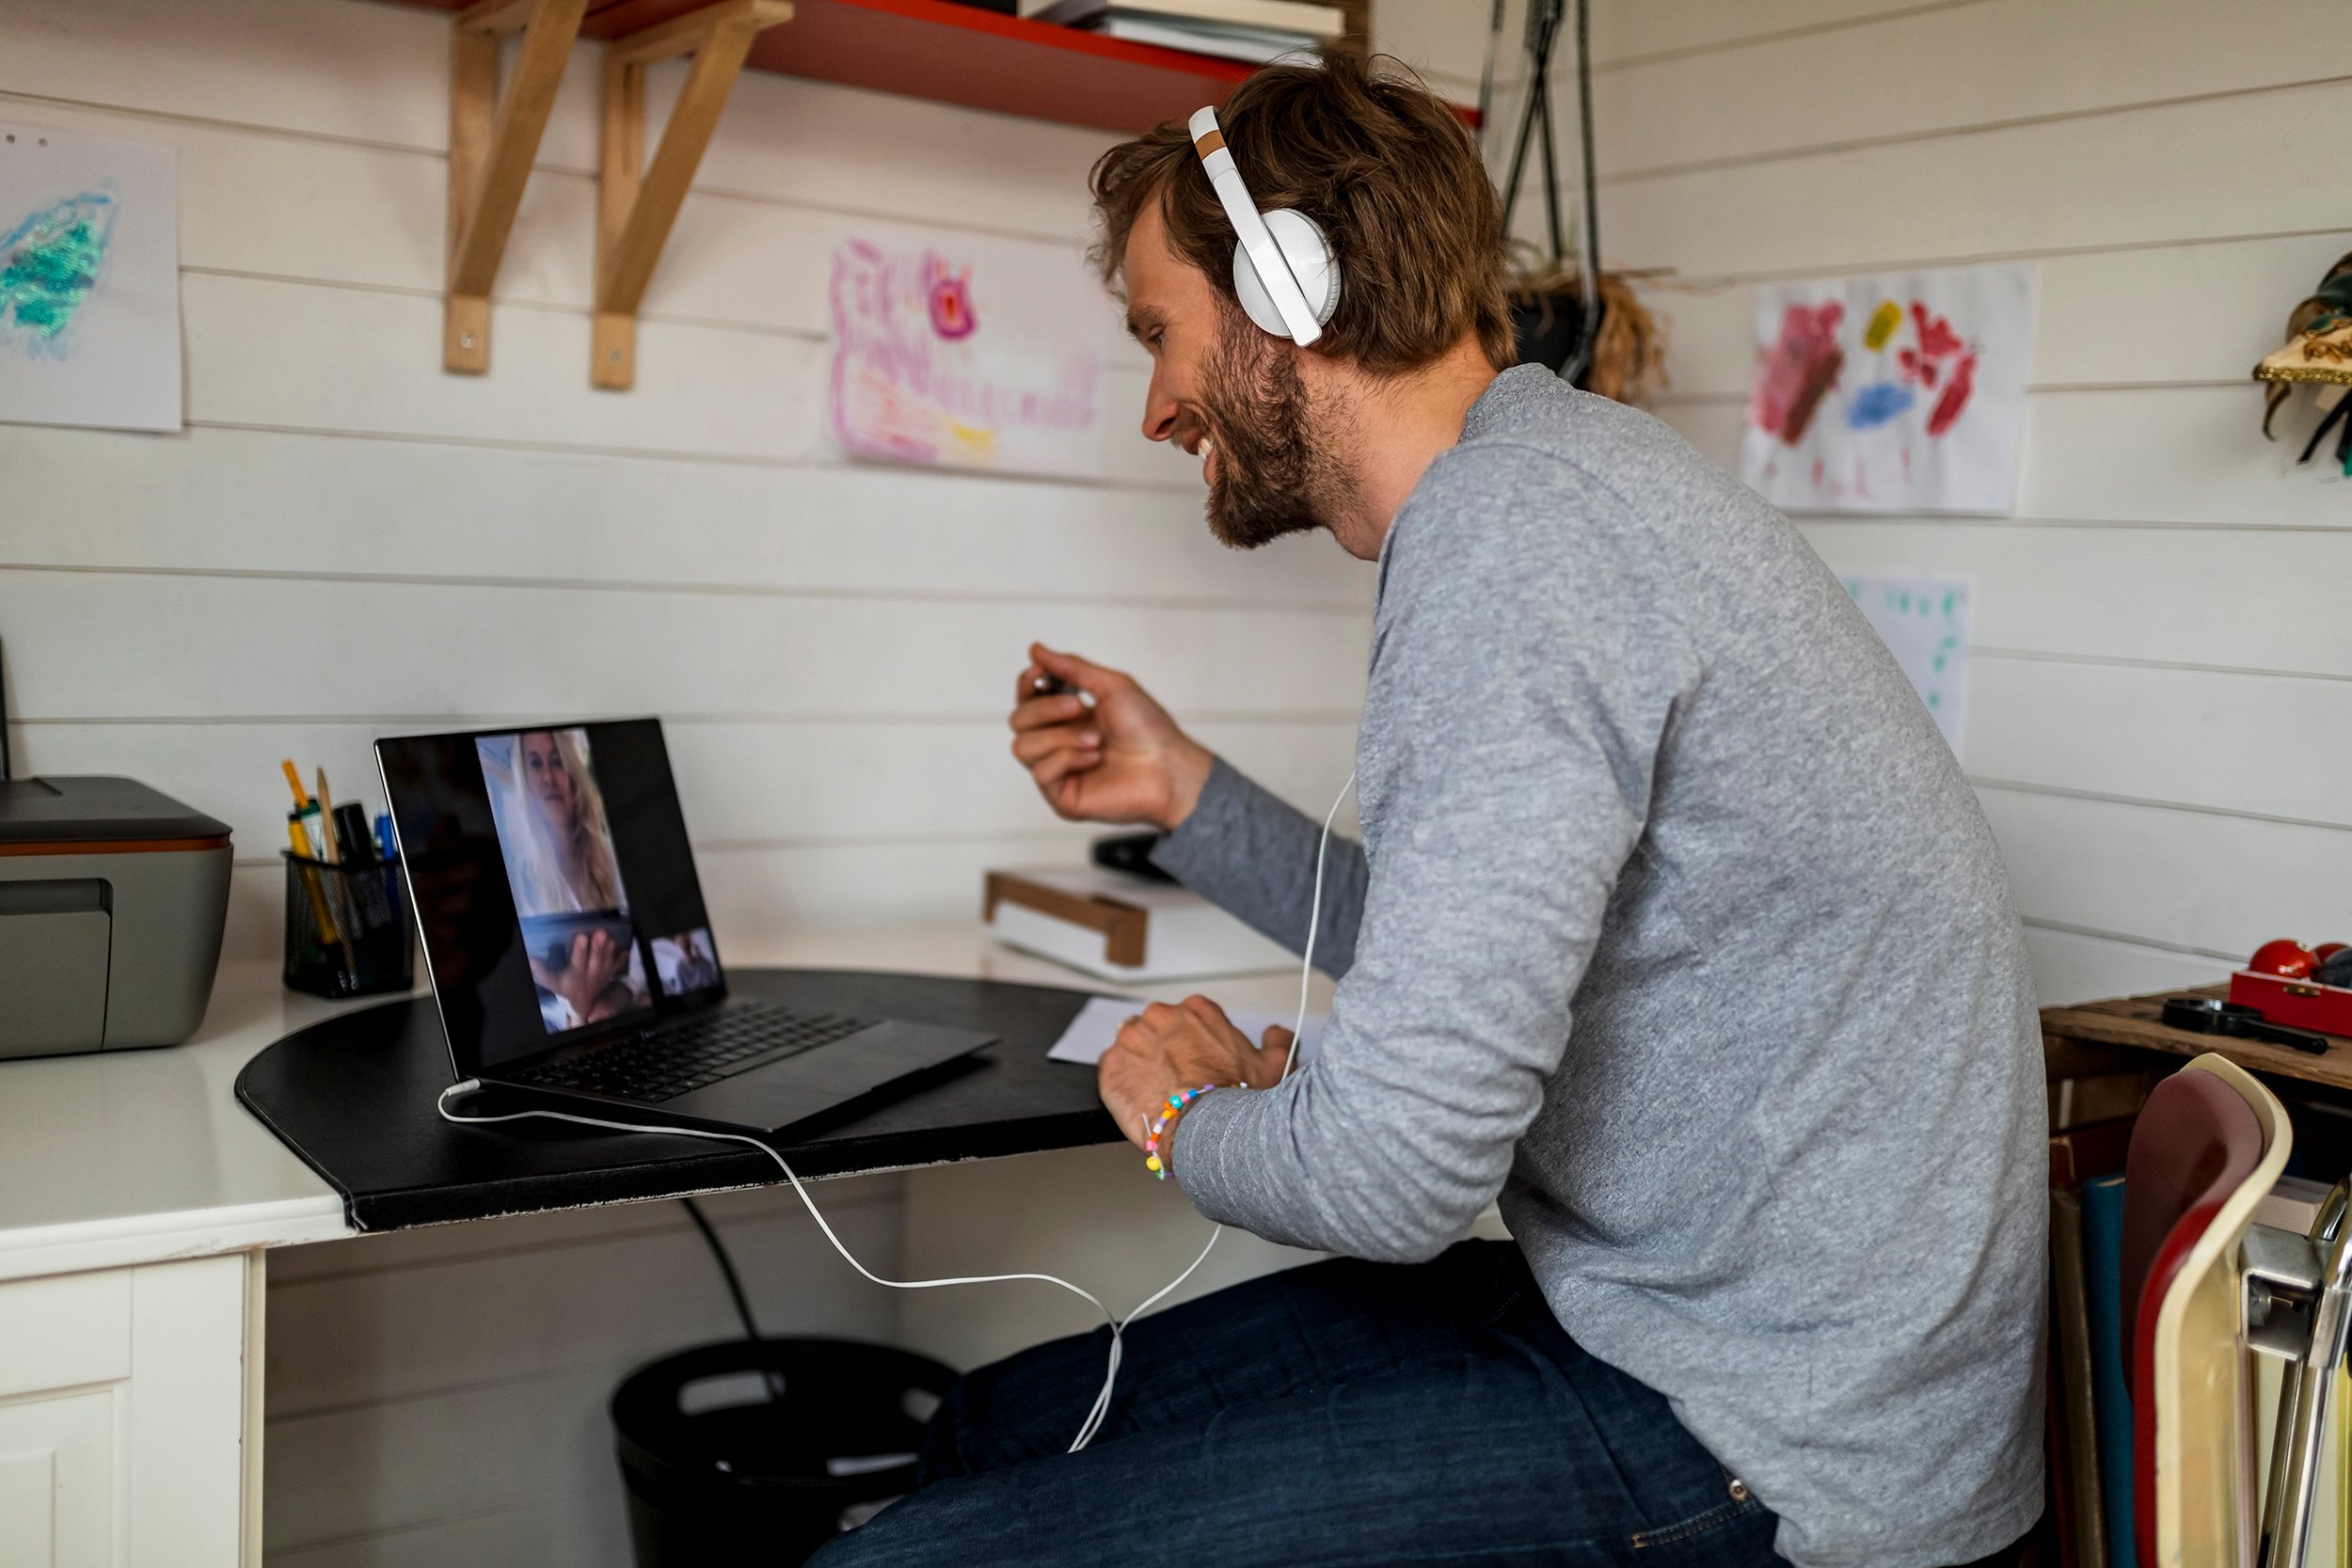 Mies istuu harmaassa paidassa ja kuulokkeet päässä työhuoneessa, jossa on seinillä lasten värikkäitä piirrustuksia ja katsoo tietokoneen ruutua, jossa näkyy toisen henkilön kasvot.